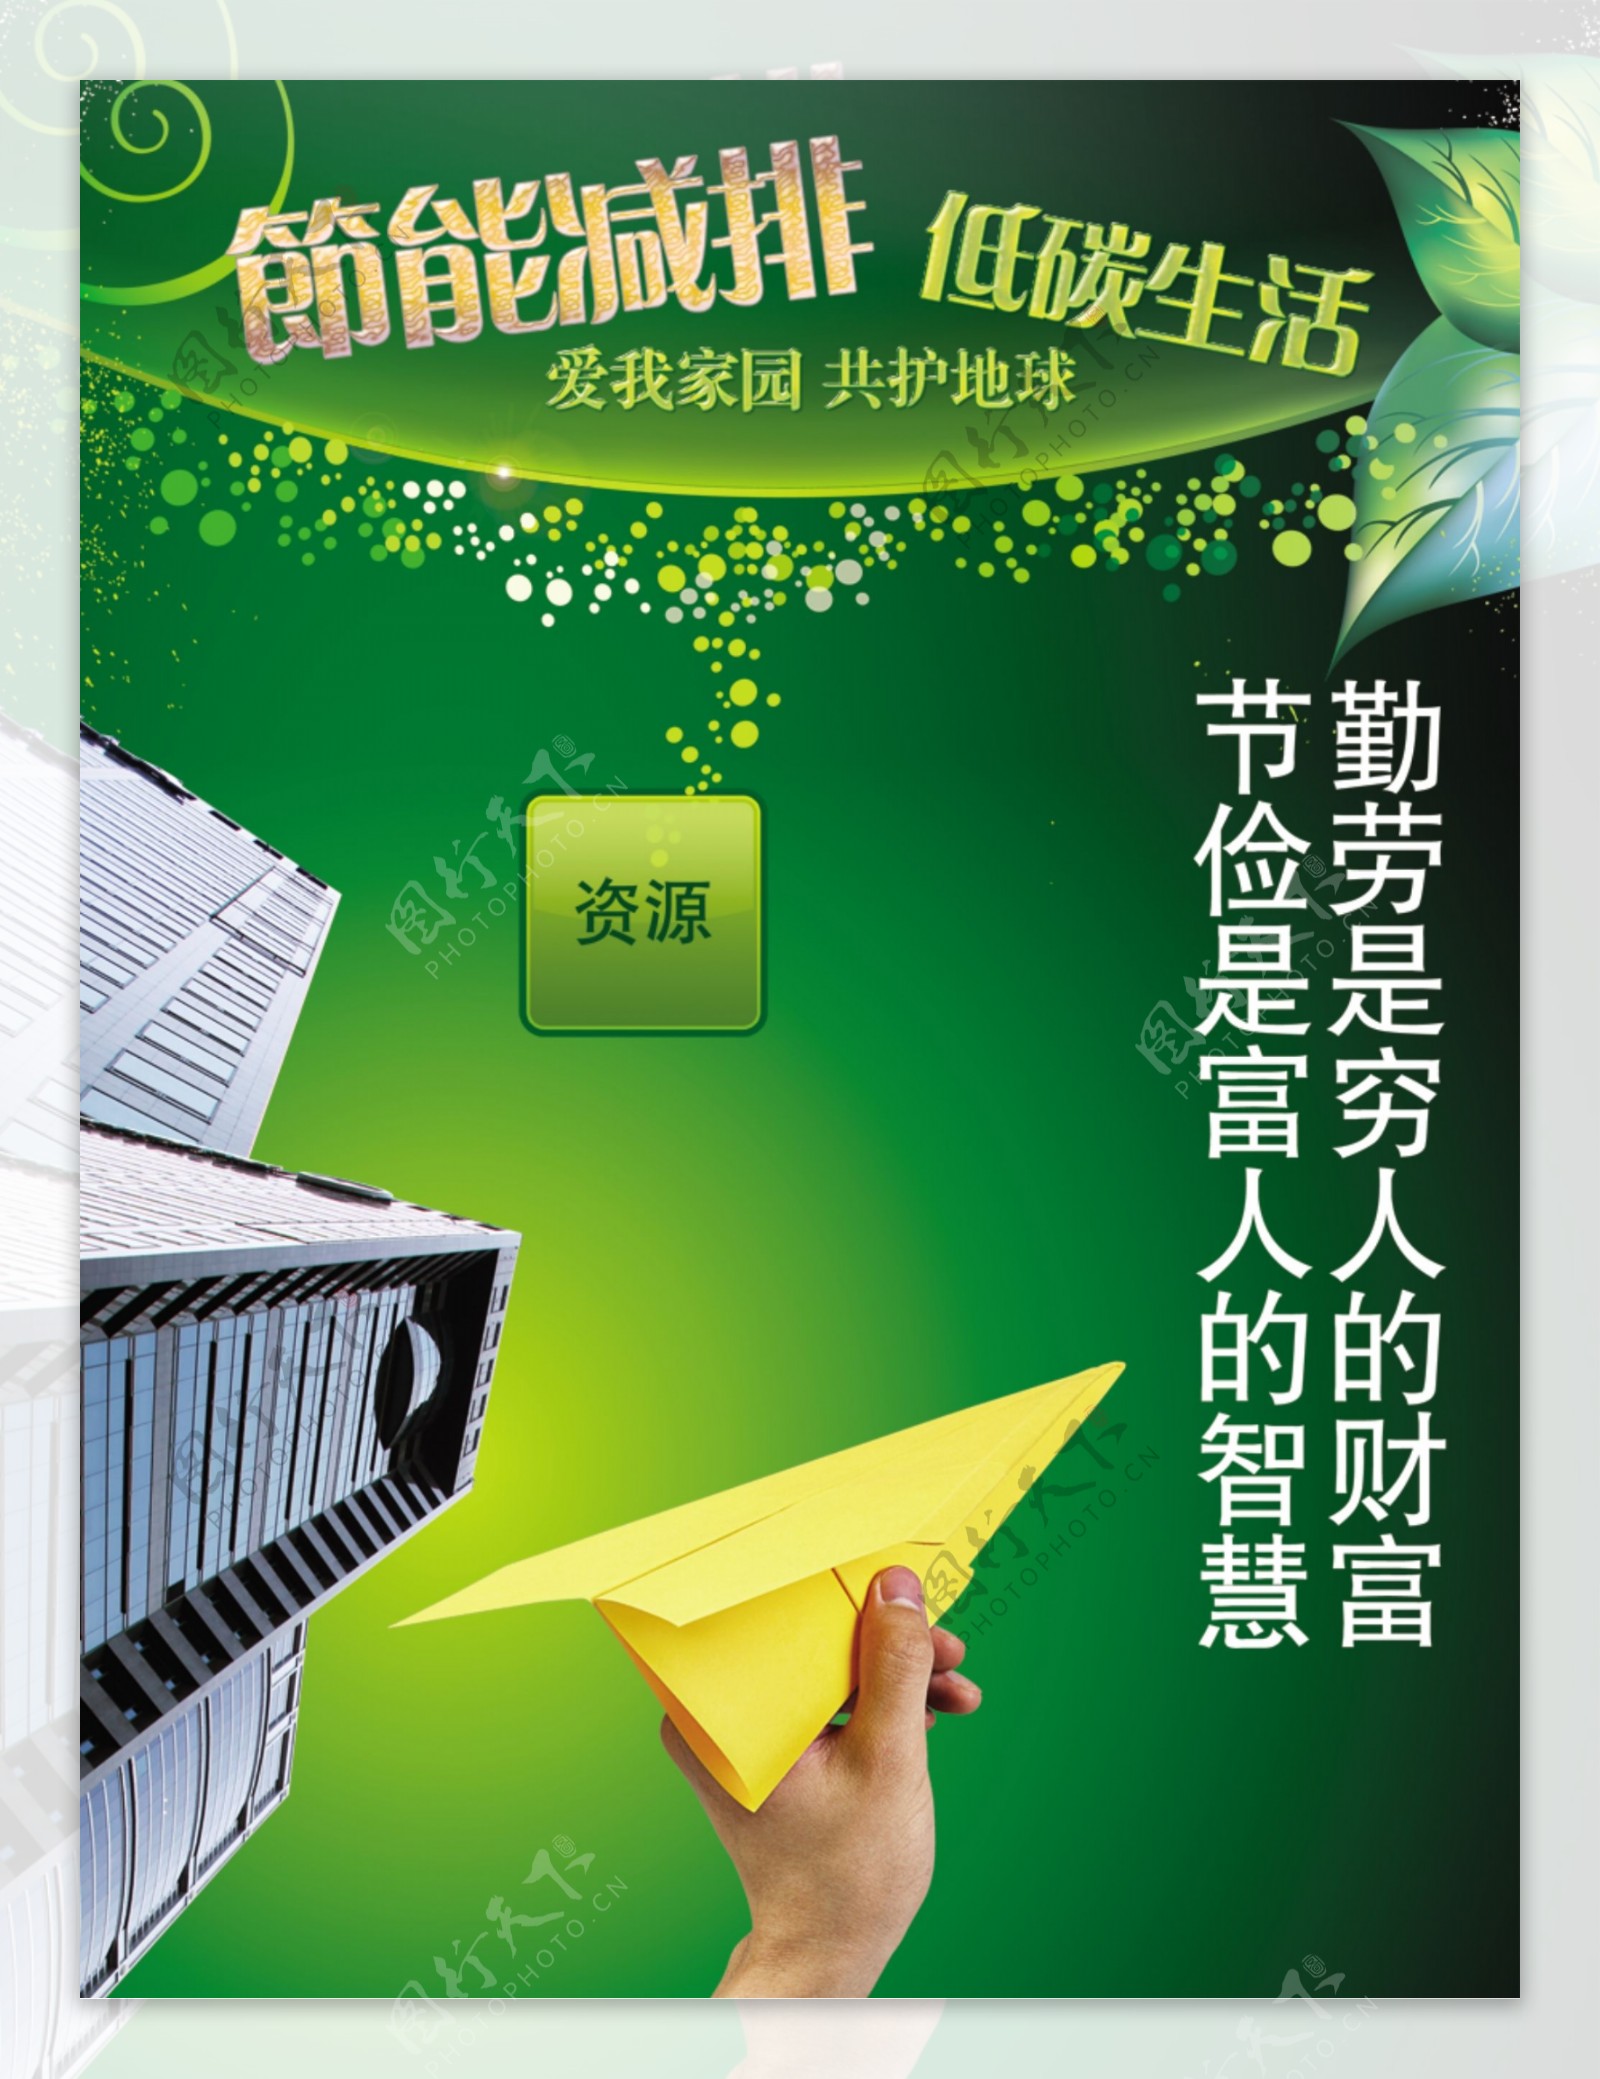 绿色环保公益广告创意高楼纸飞机篇